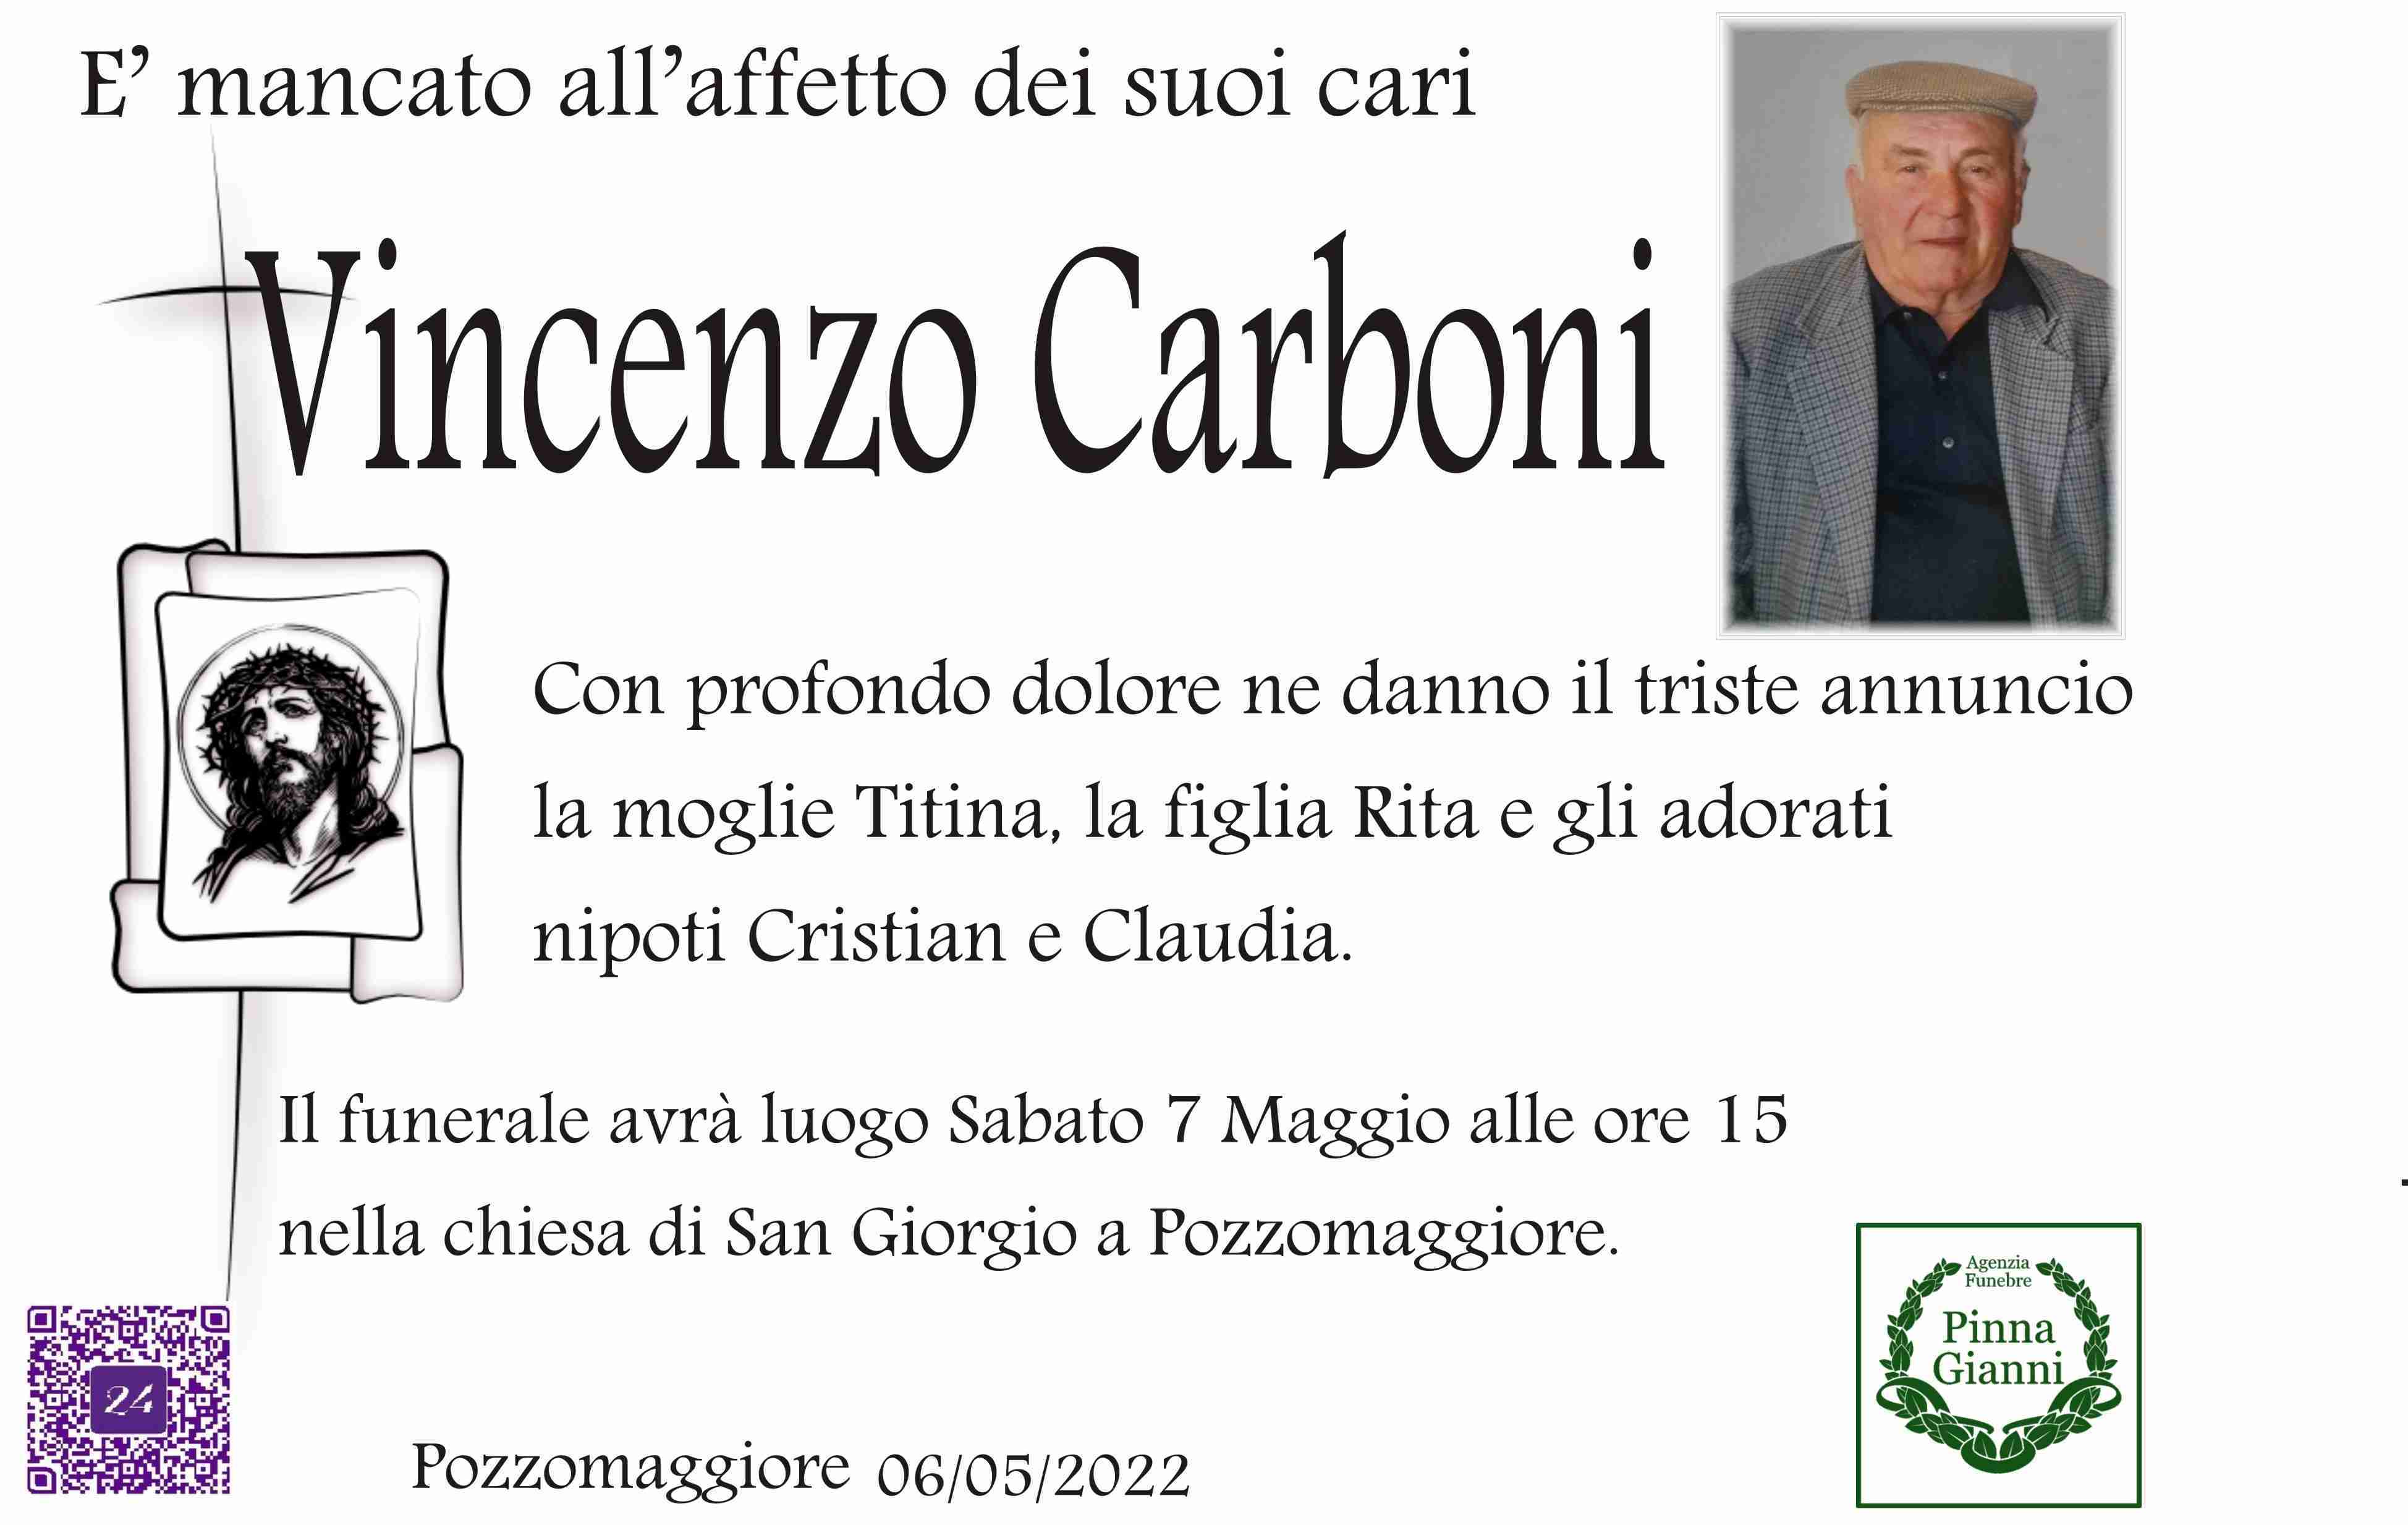 Vincenzo Carboni